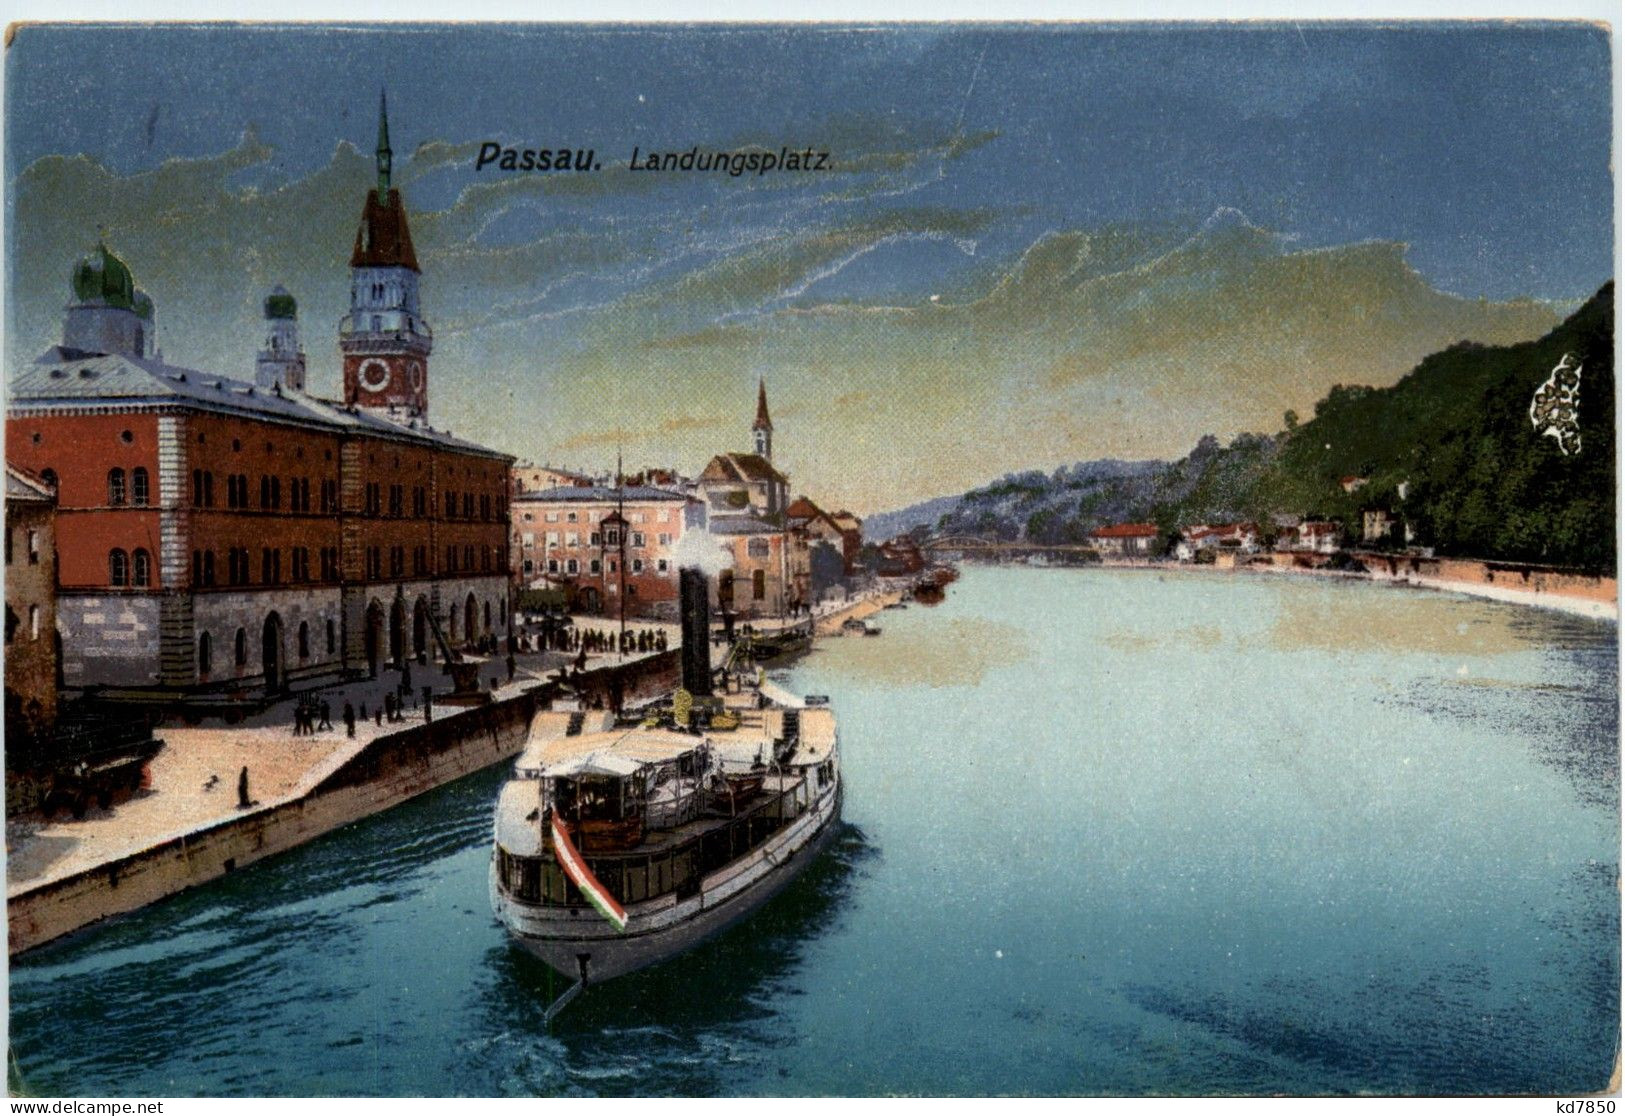 Passau/Bayern - Passau, Landungsplatz - Passau